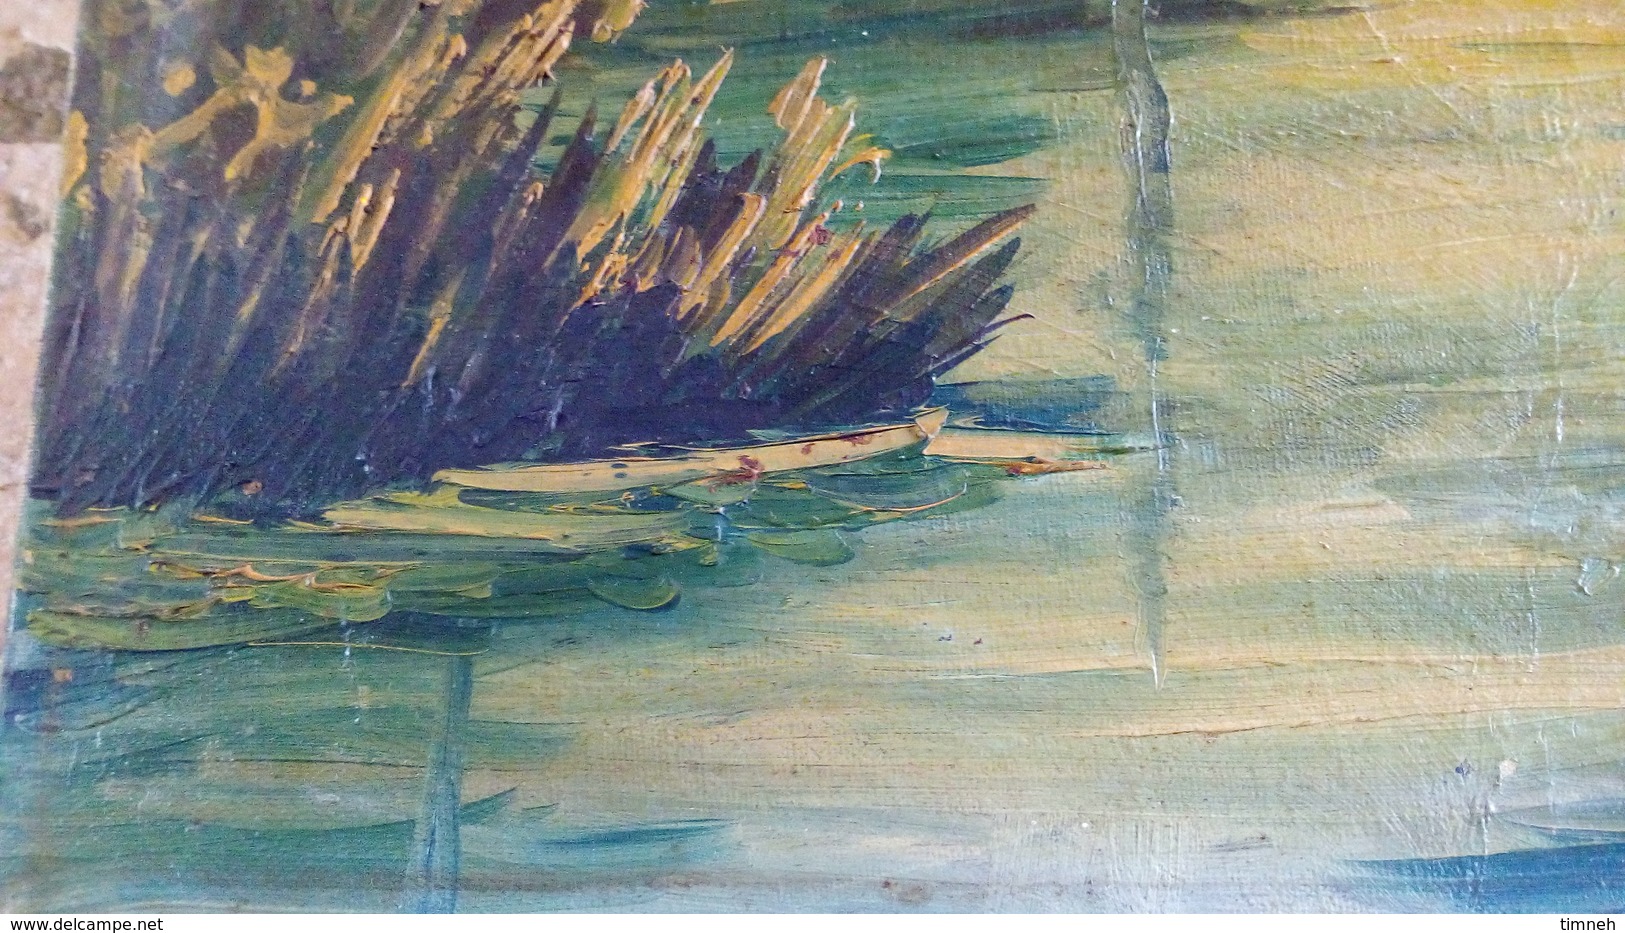 Huile sur toile - Paysage de campagne - bord de l'eau - rivière et arbres - non signé vers 1960 - 46cmx38cm -